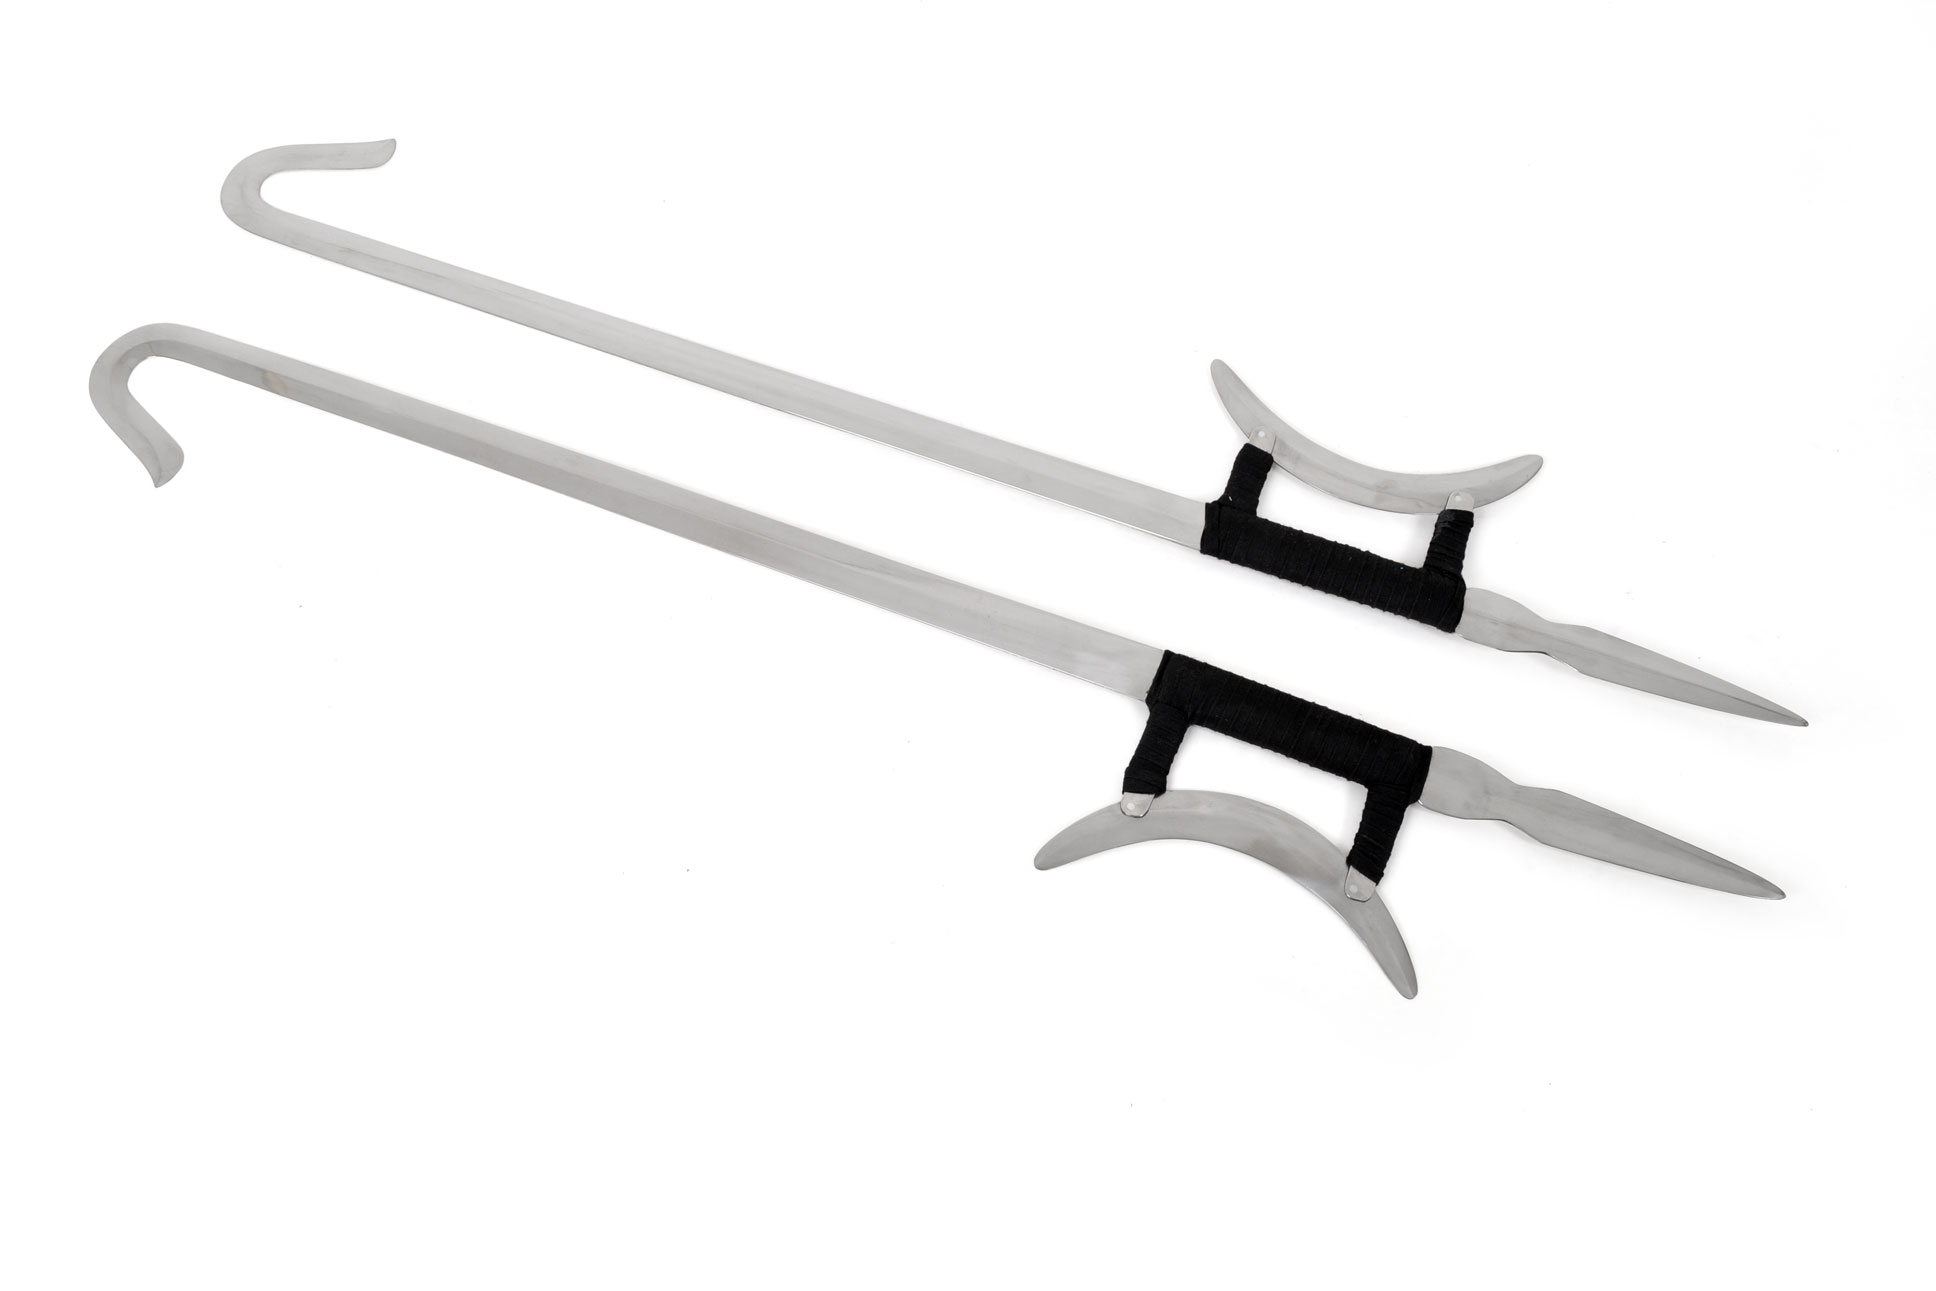 Wushu/Kung Fu Weapons